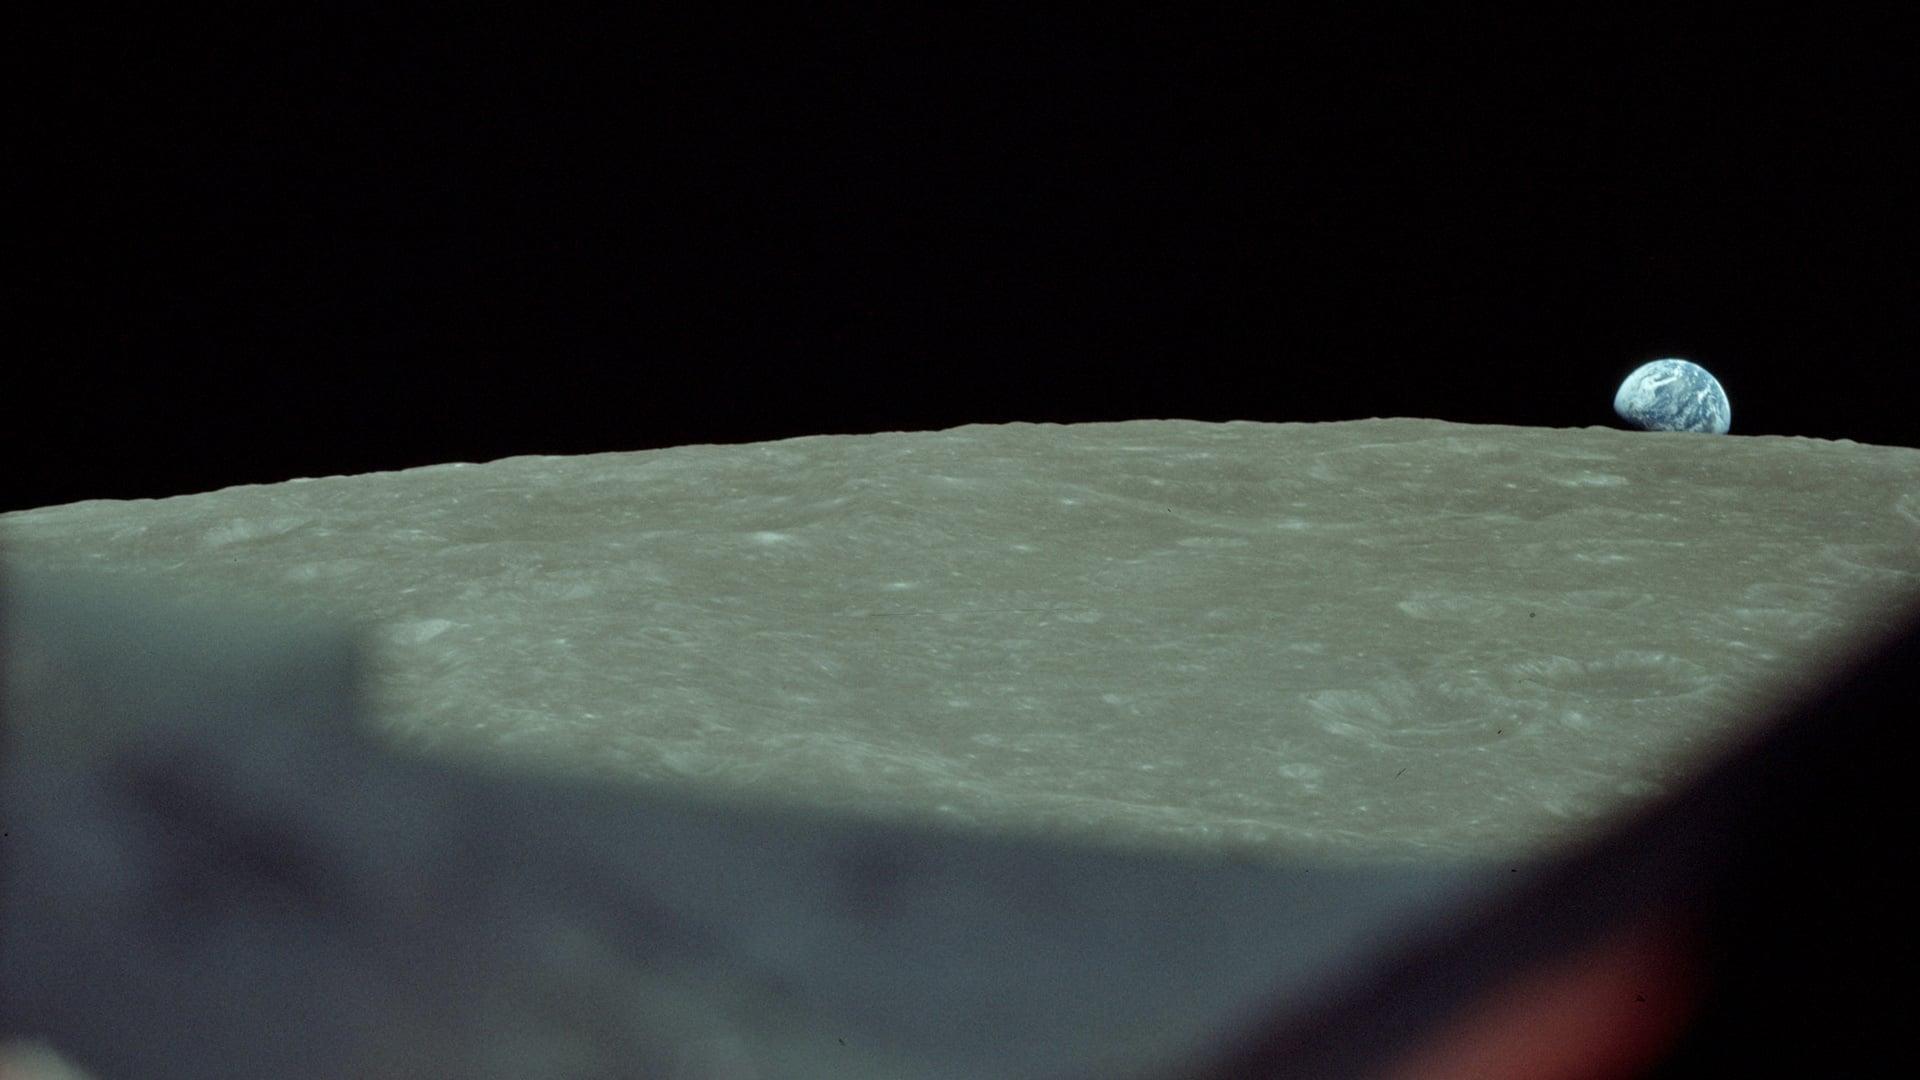 Earthrise backdrop